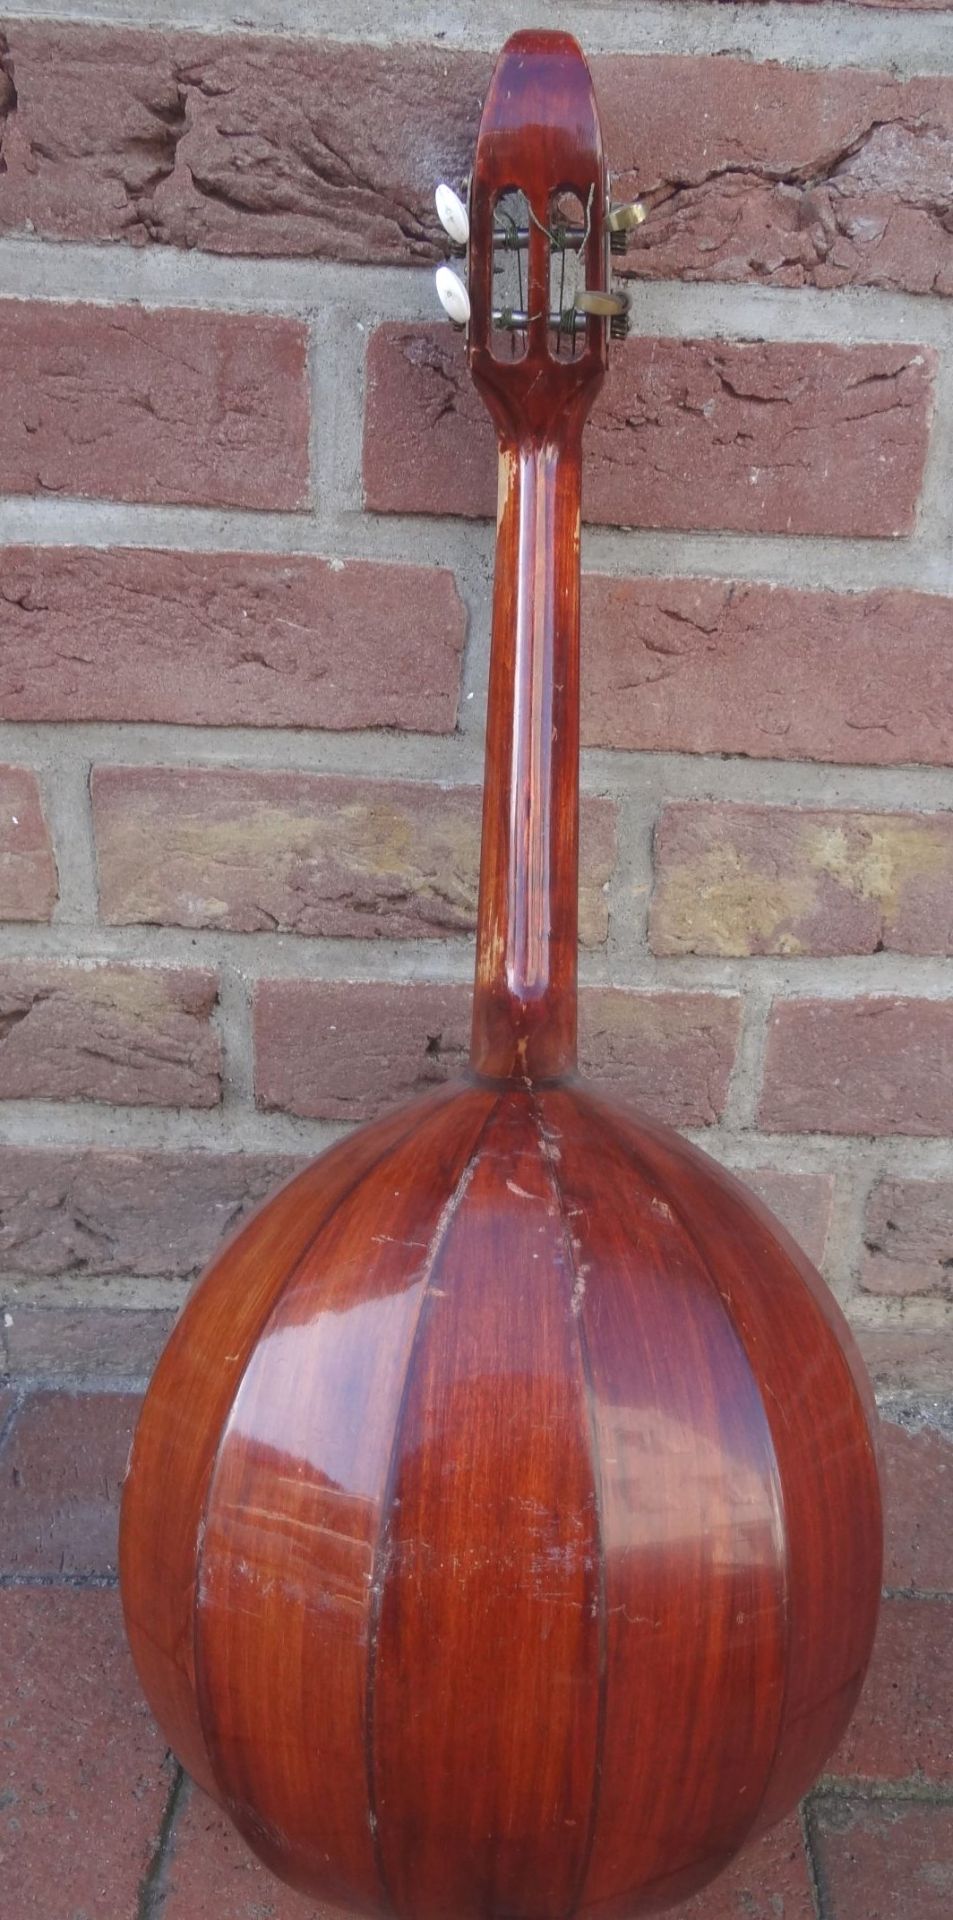 4 saitiges Zupf-Instrument, Laute?, Alters-u. Gebrauchsspuren, L-59 cm- - -22.61 % buyer's premium - Bild 6 aus 6